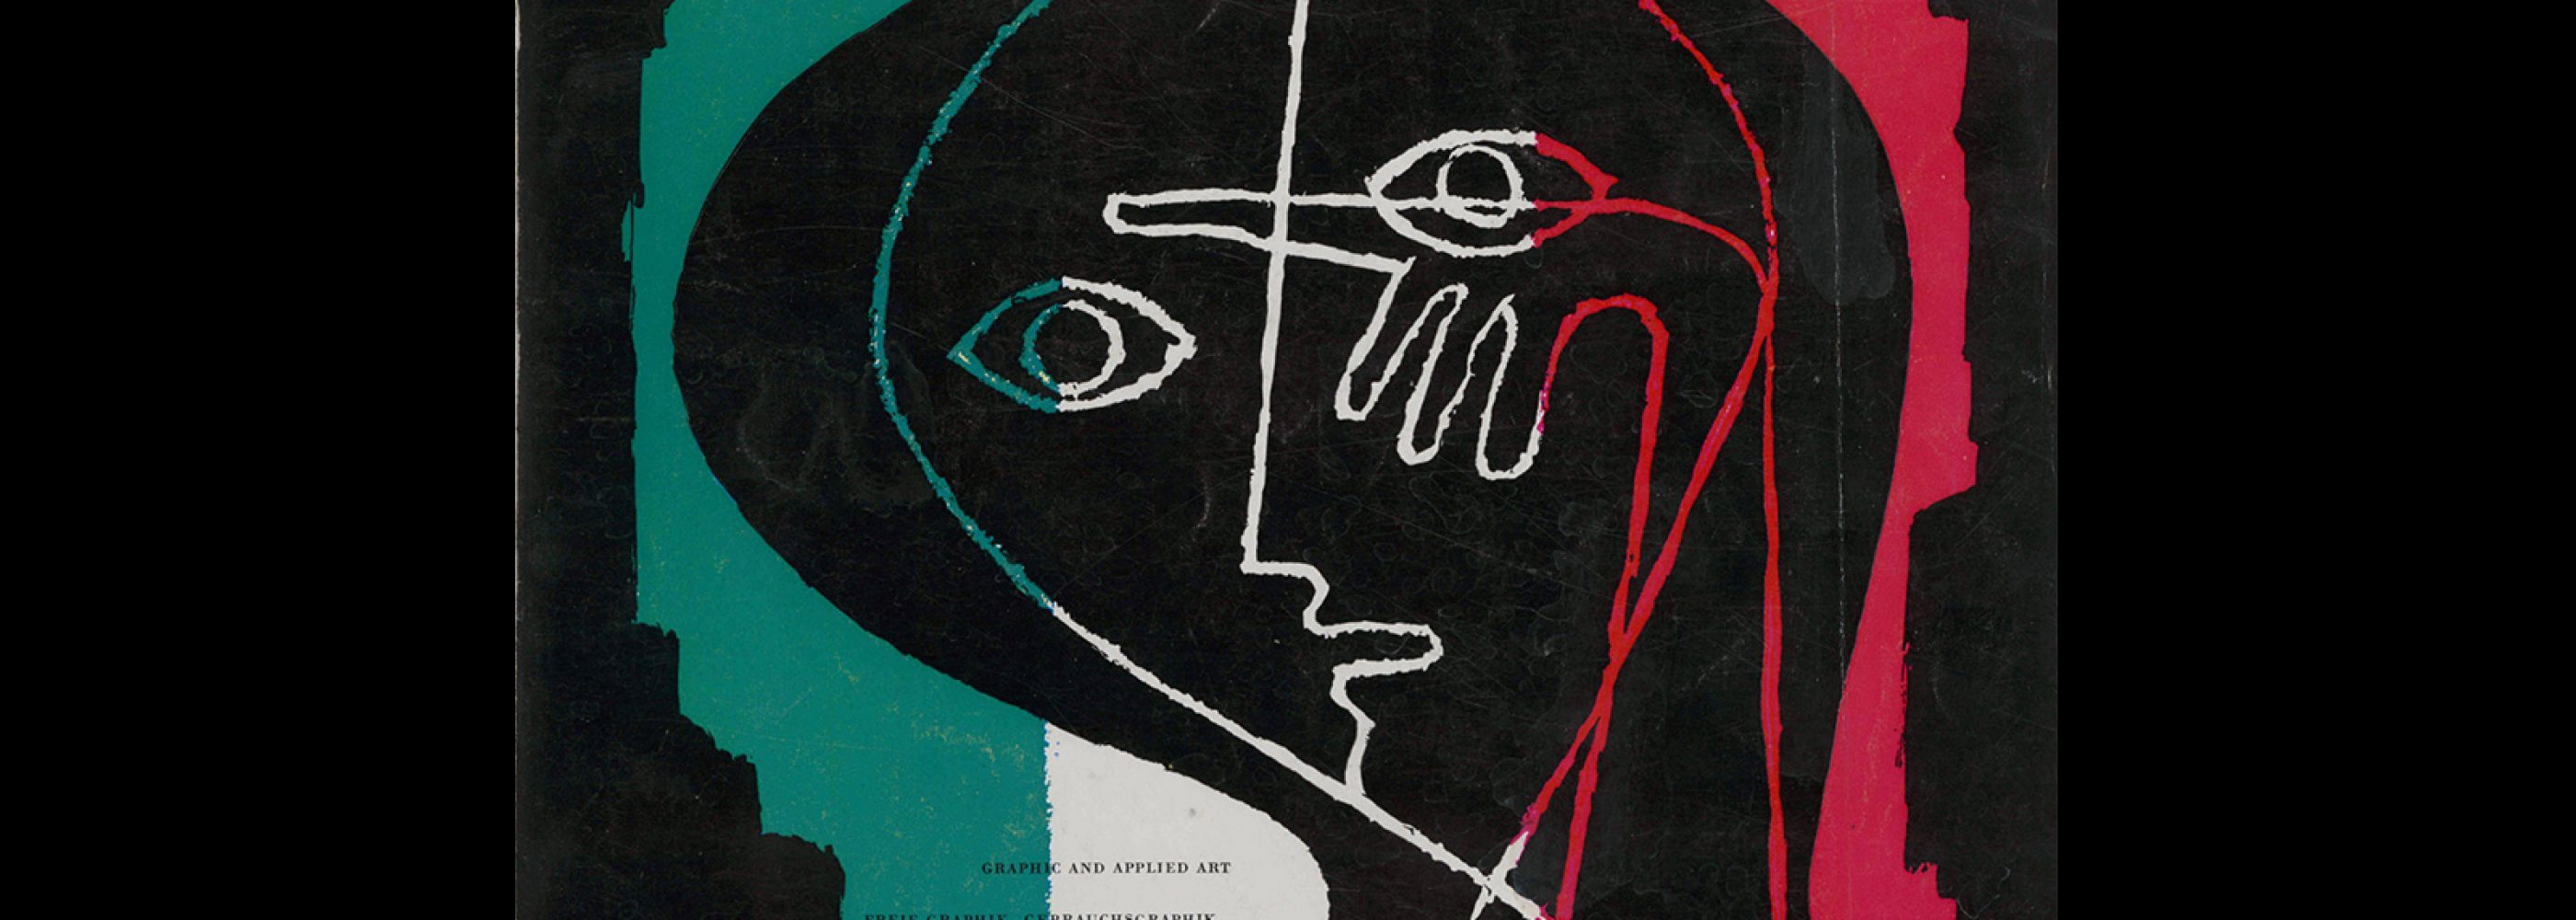 Graphis 66, 1956. Cover design by Celestino Piatti